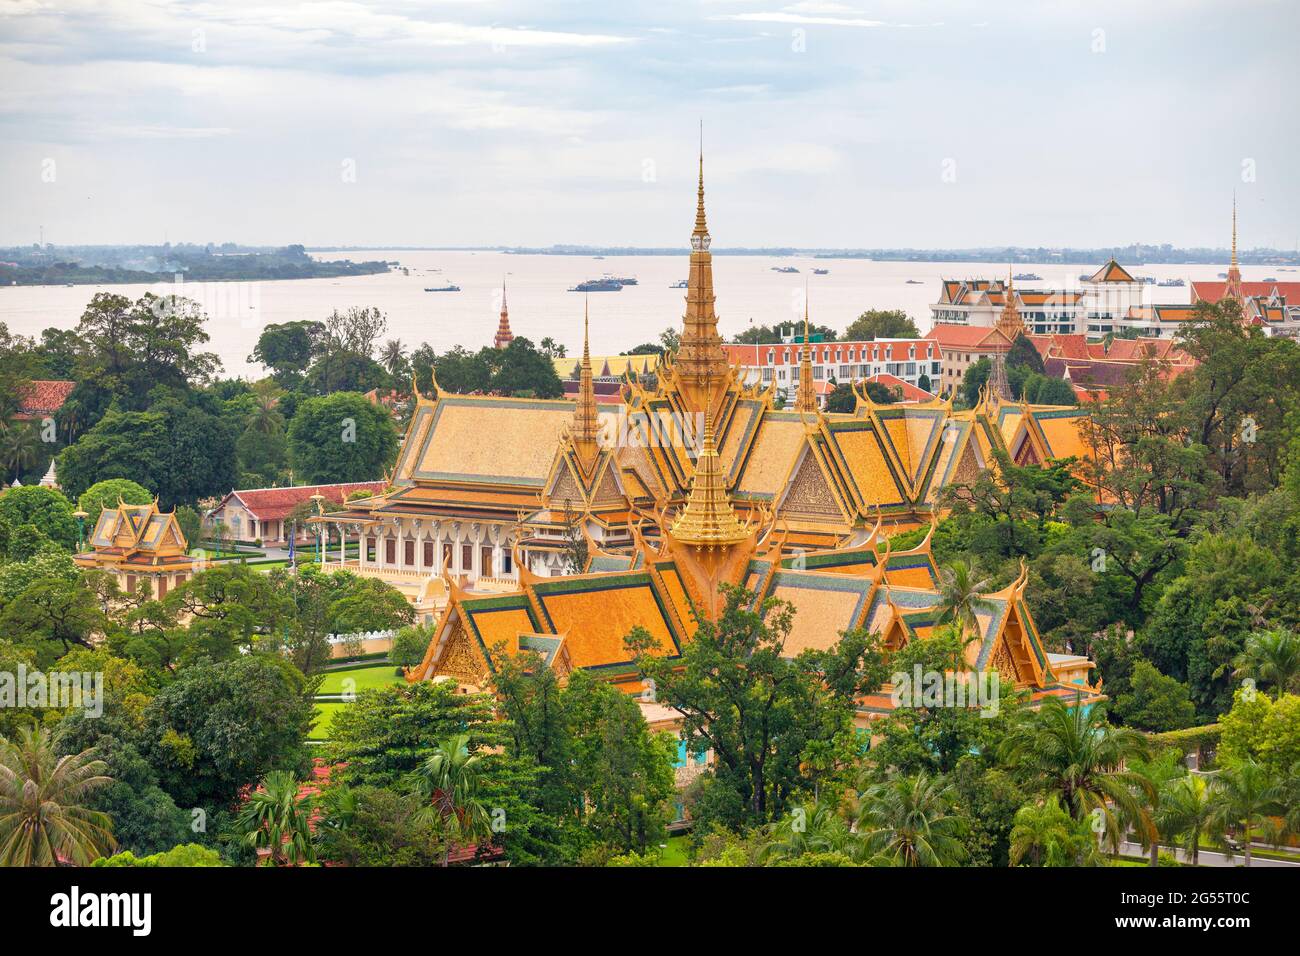 Phnom Penh, Cambodge - août 26 2018 : le Palais Royal est un complexe de bâtiments qui sert de résidence royale du roi du Cambodge. Banque D'Images